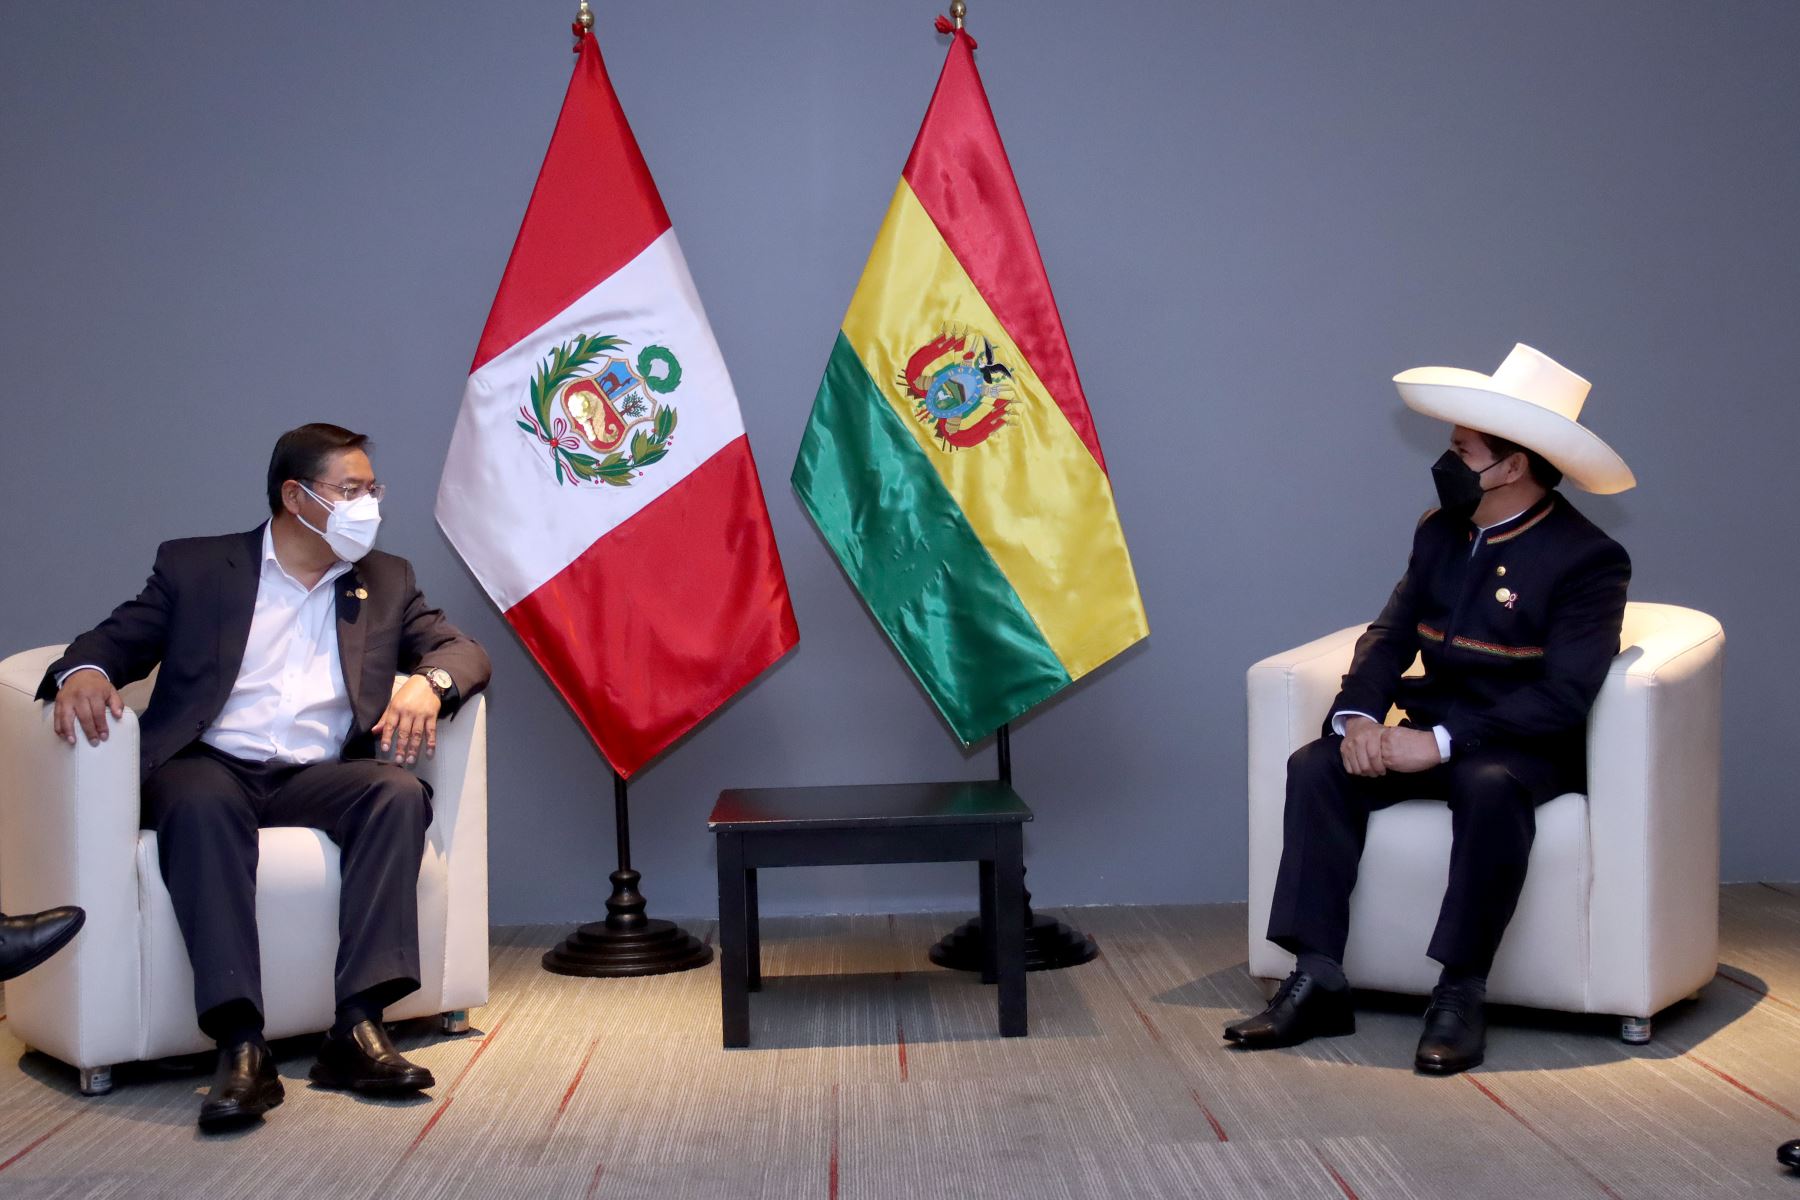 El presidente de la República, Pedro Castillo, sostuvo una reunión protocolar con su similar de Bolivia, Luis Arce Catacora
Foto: ANDINA/Prensa Presidencia